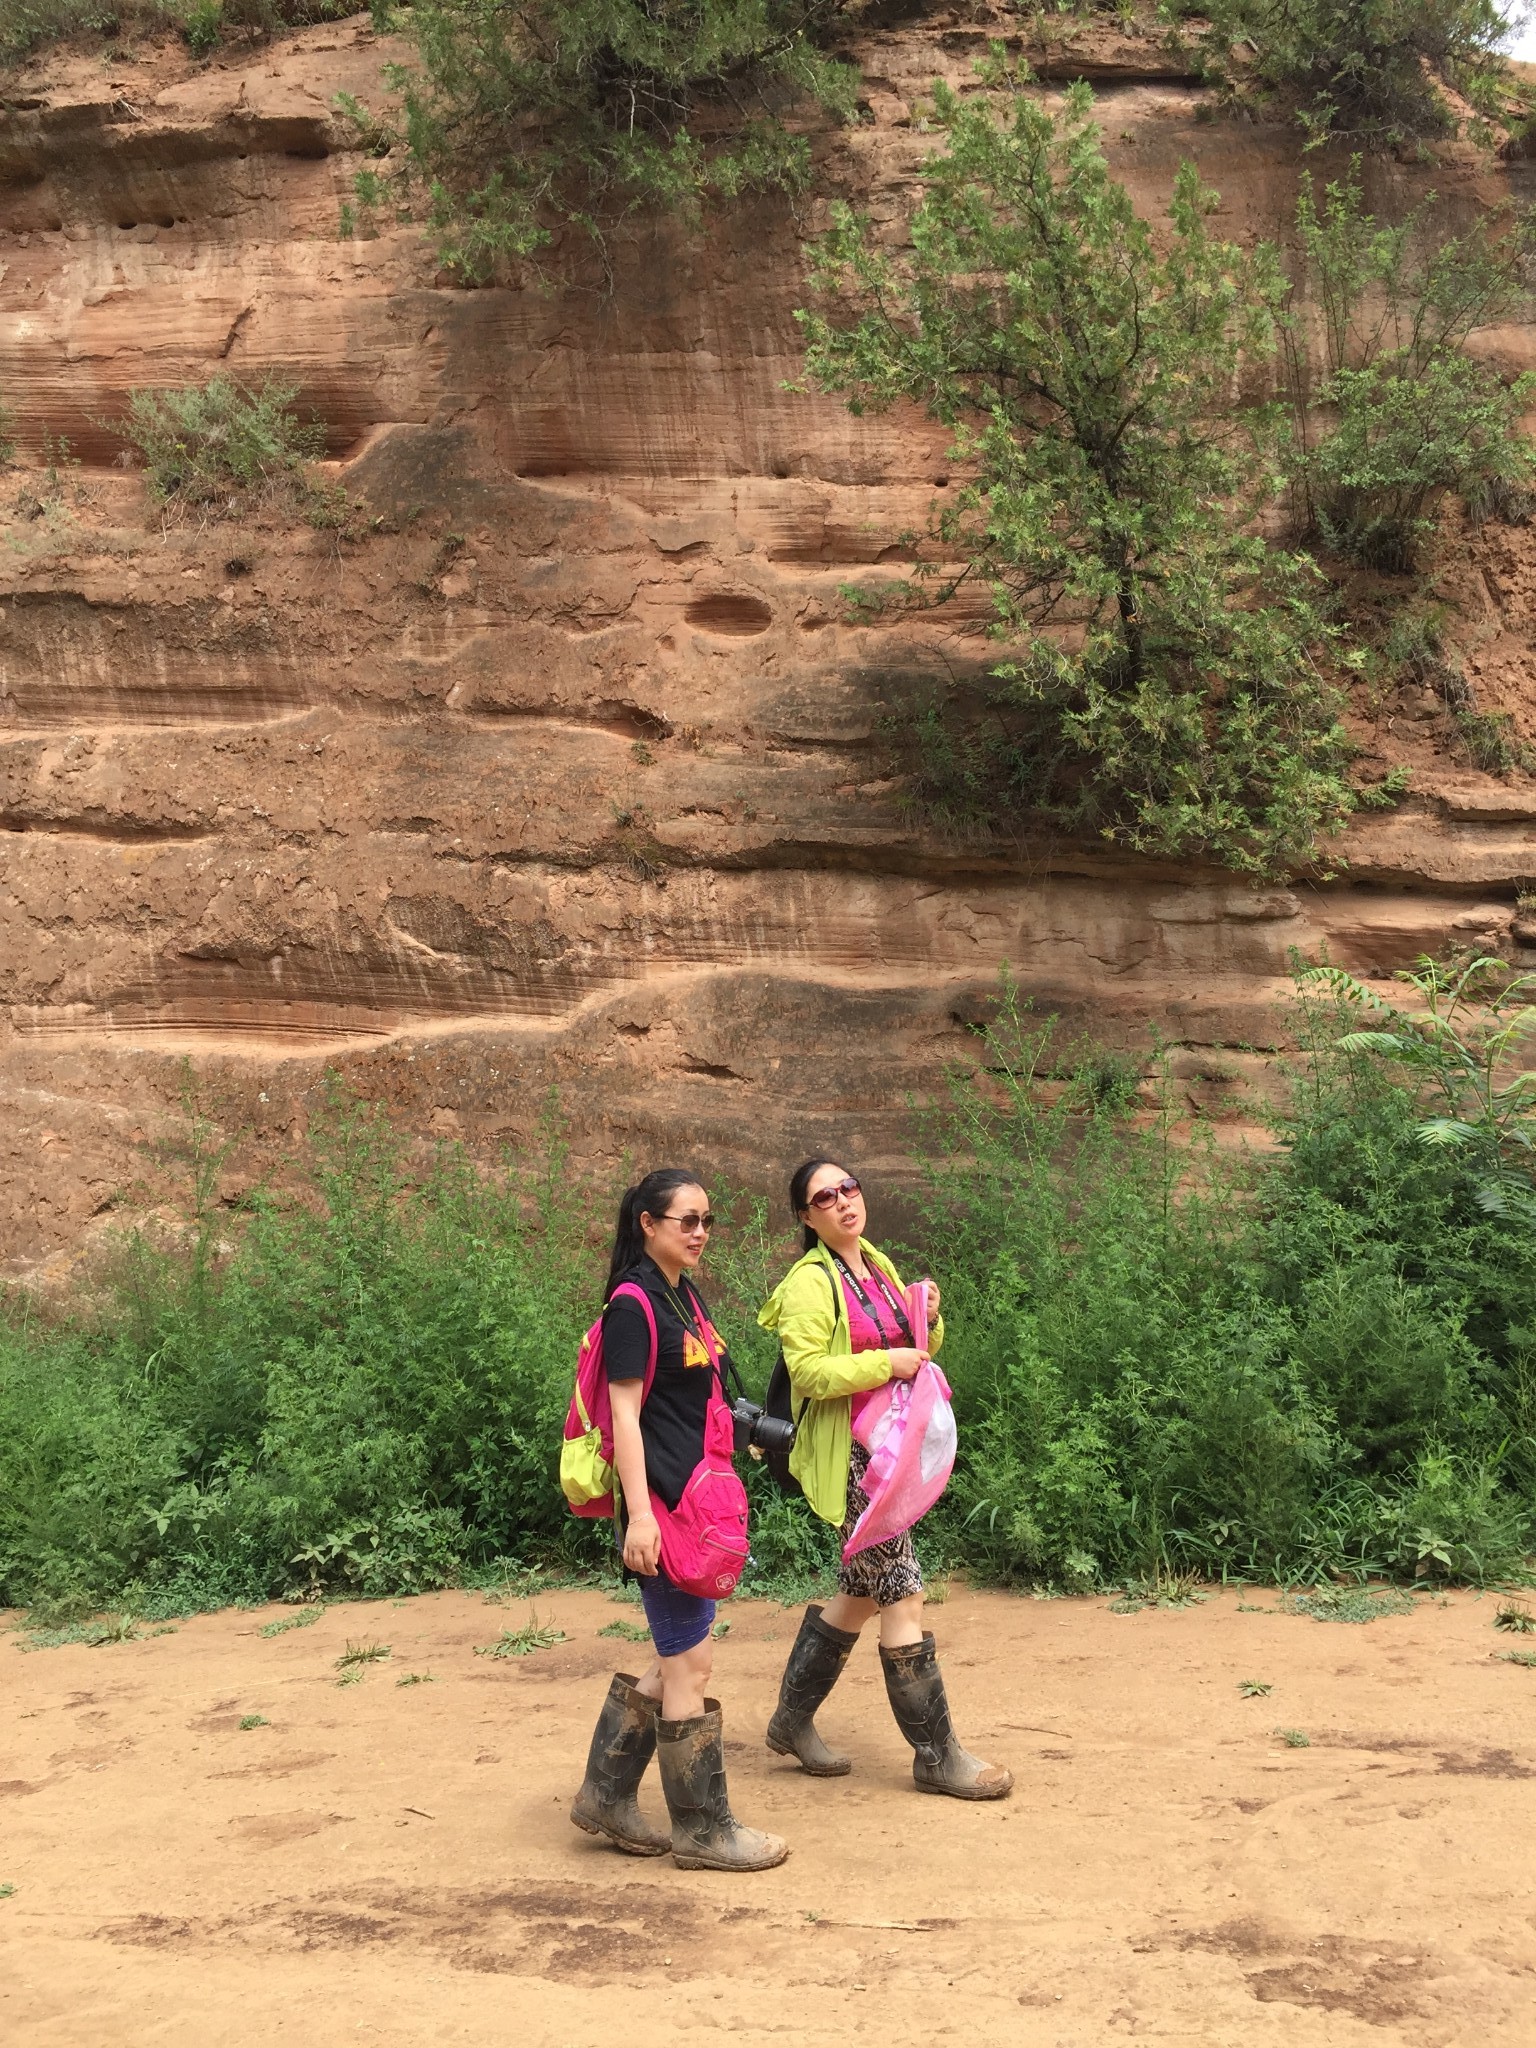 穿行在黄土高坡遇见令人窒息的美(壶口瀑布,雨岔大峡谷篇)一,陕北旅游